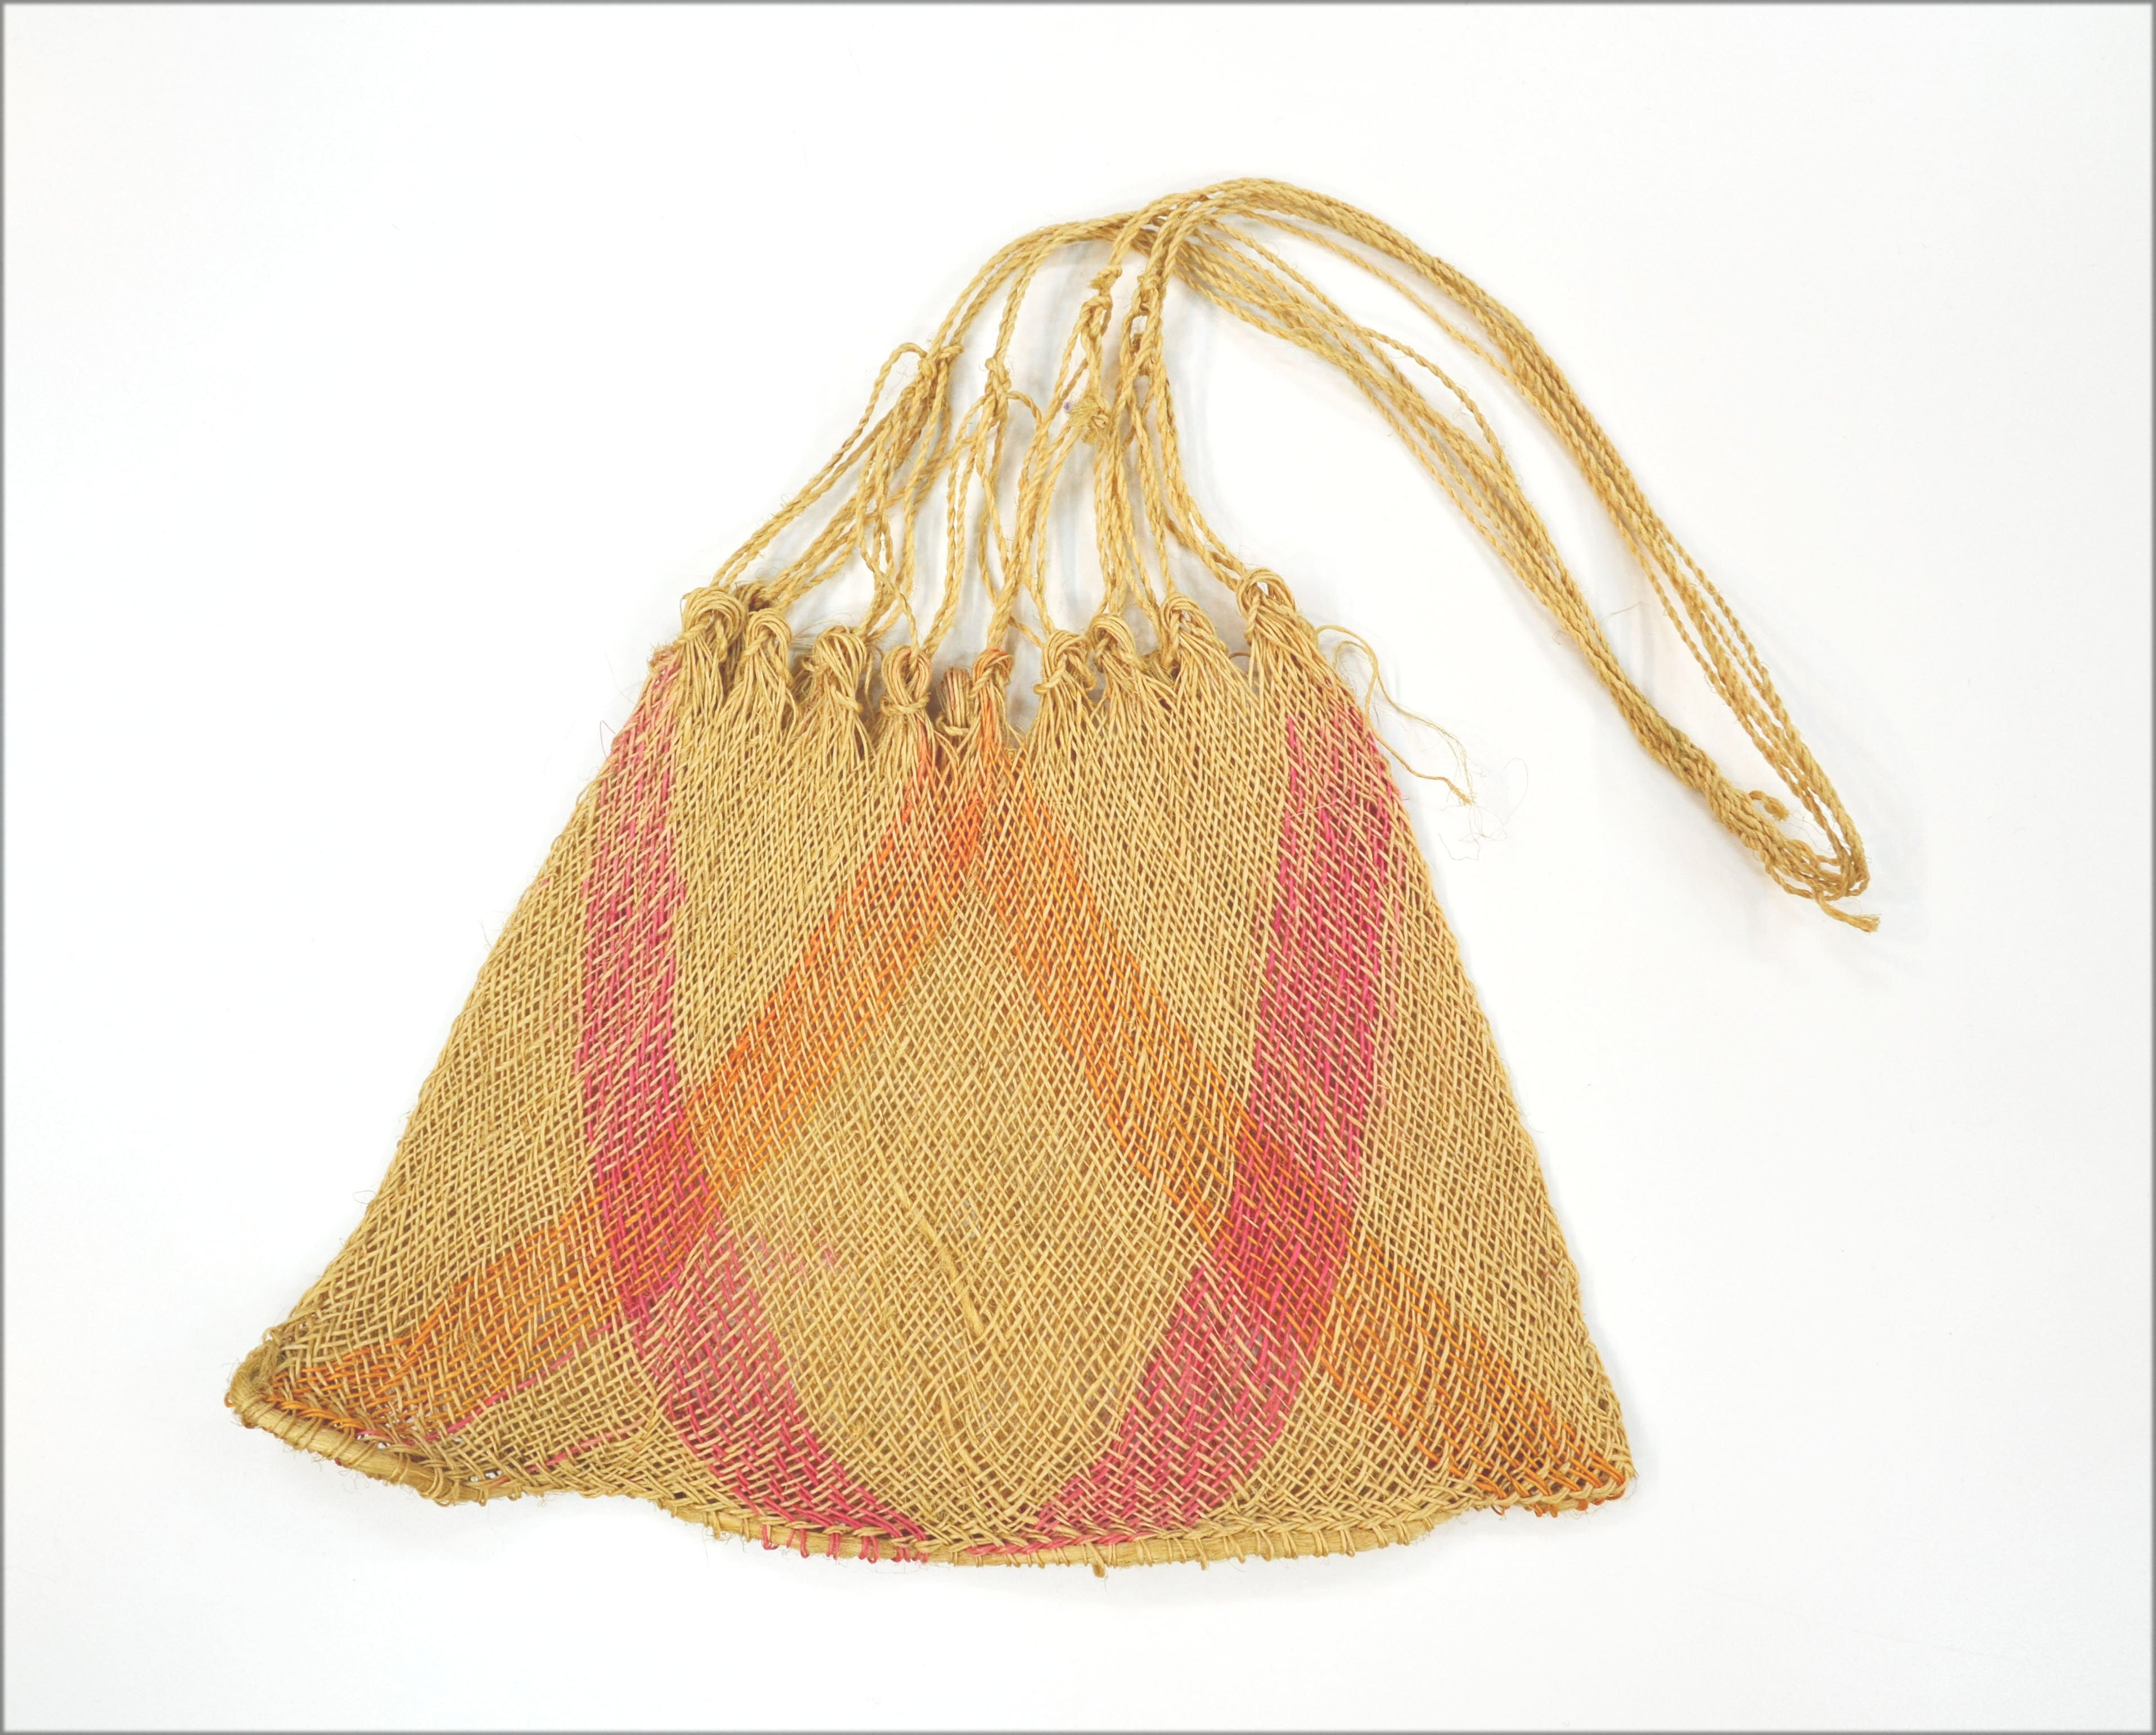 Tasche, mochila (Seminar für Kulturanthropologie des Textilen an der Technischen Universität Dortmund CC BY-NC-SA)